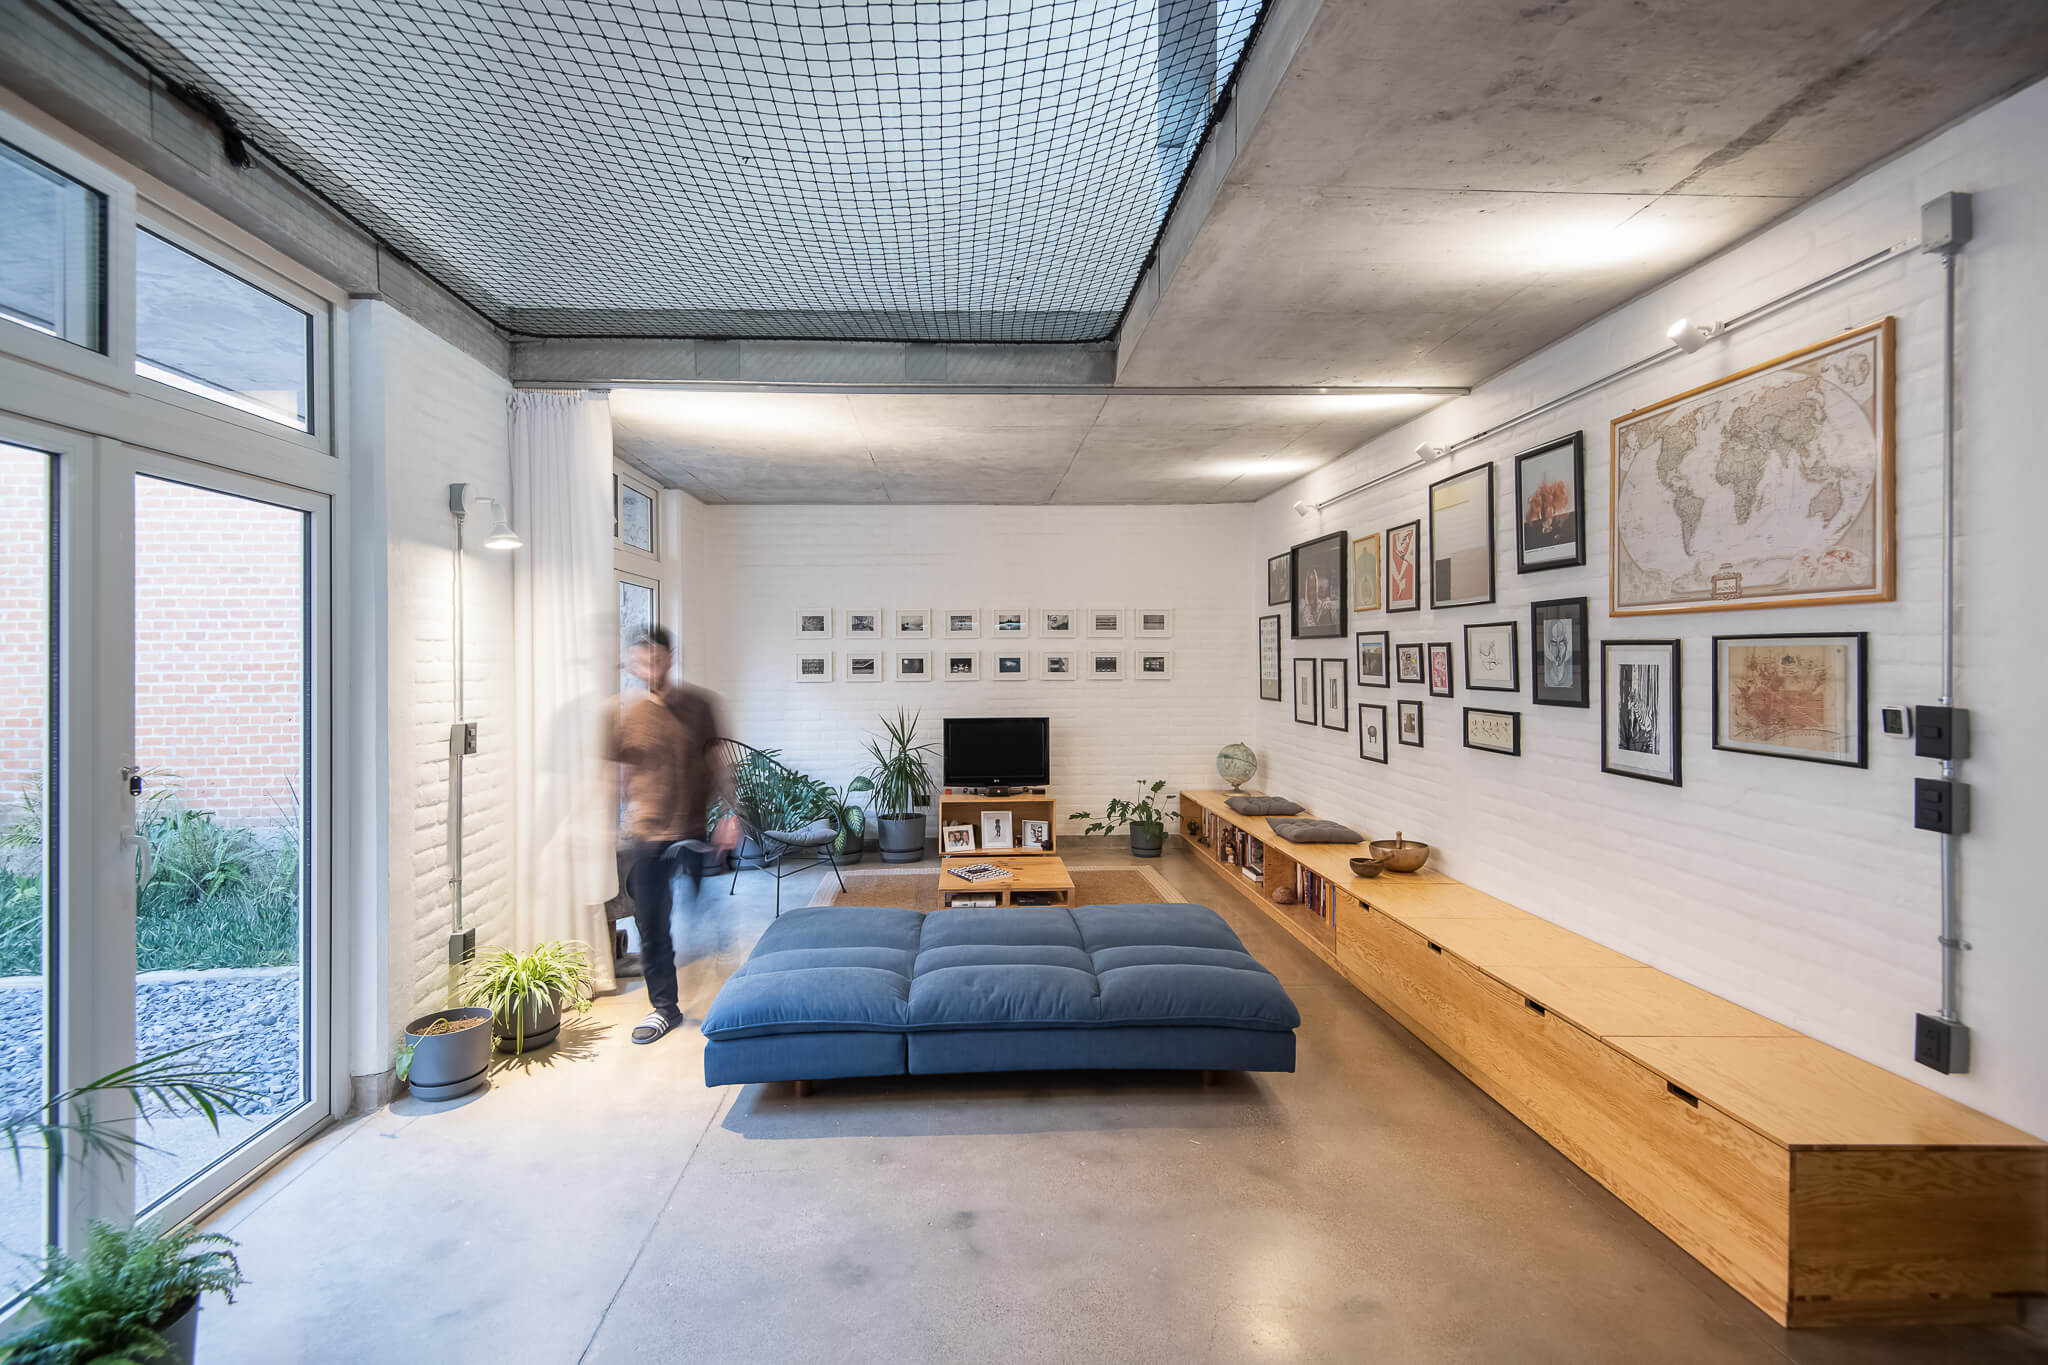 Diseño de sala de estar por fábrica de espacios con muebles en madera clara con estilo industrial muros de ladrillo blanco con retratos